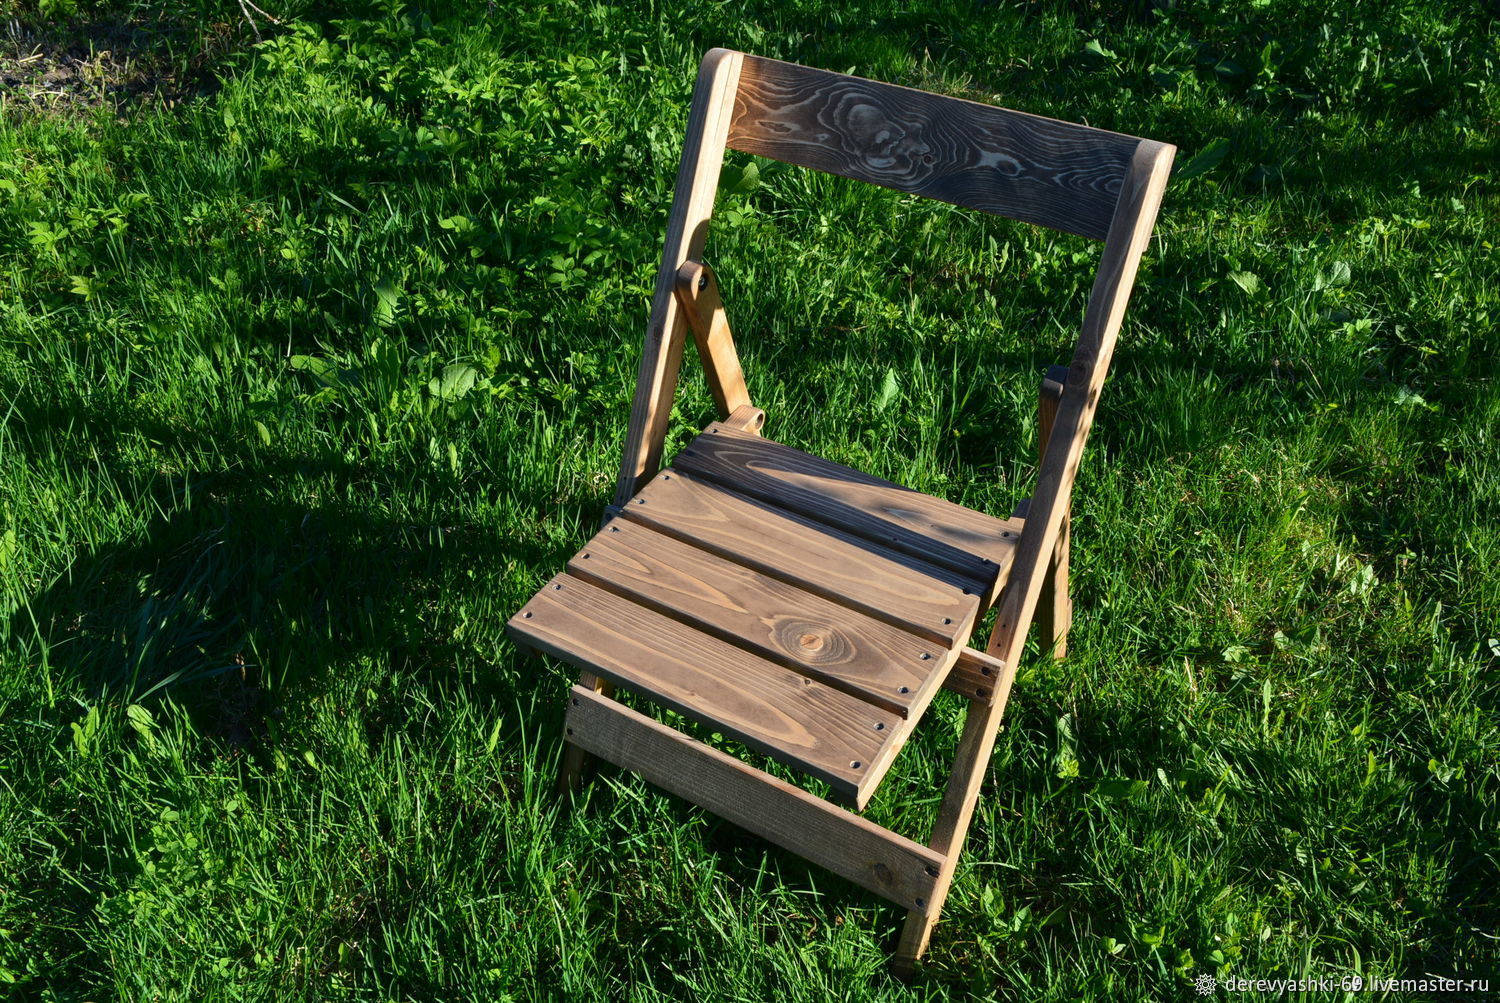 Стул складной авито. Летние стулья складные. Стулья природные раскладные. Природные складные стулья. Складные стулья для прогулок.